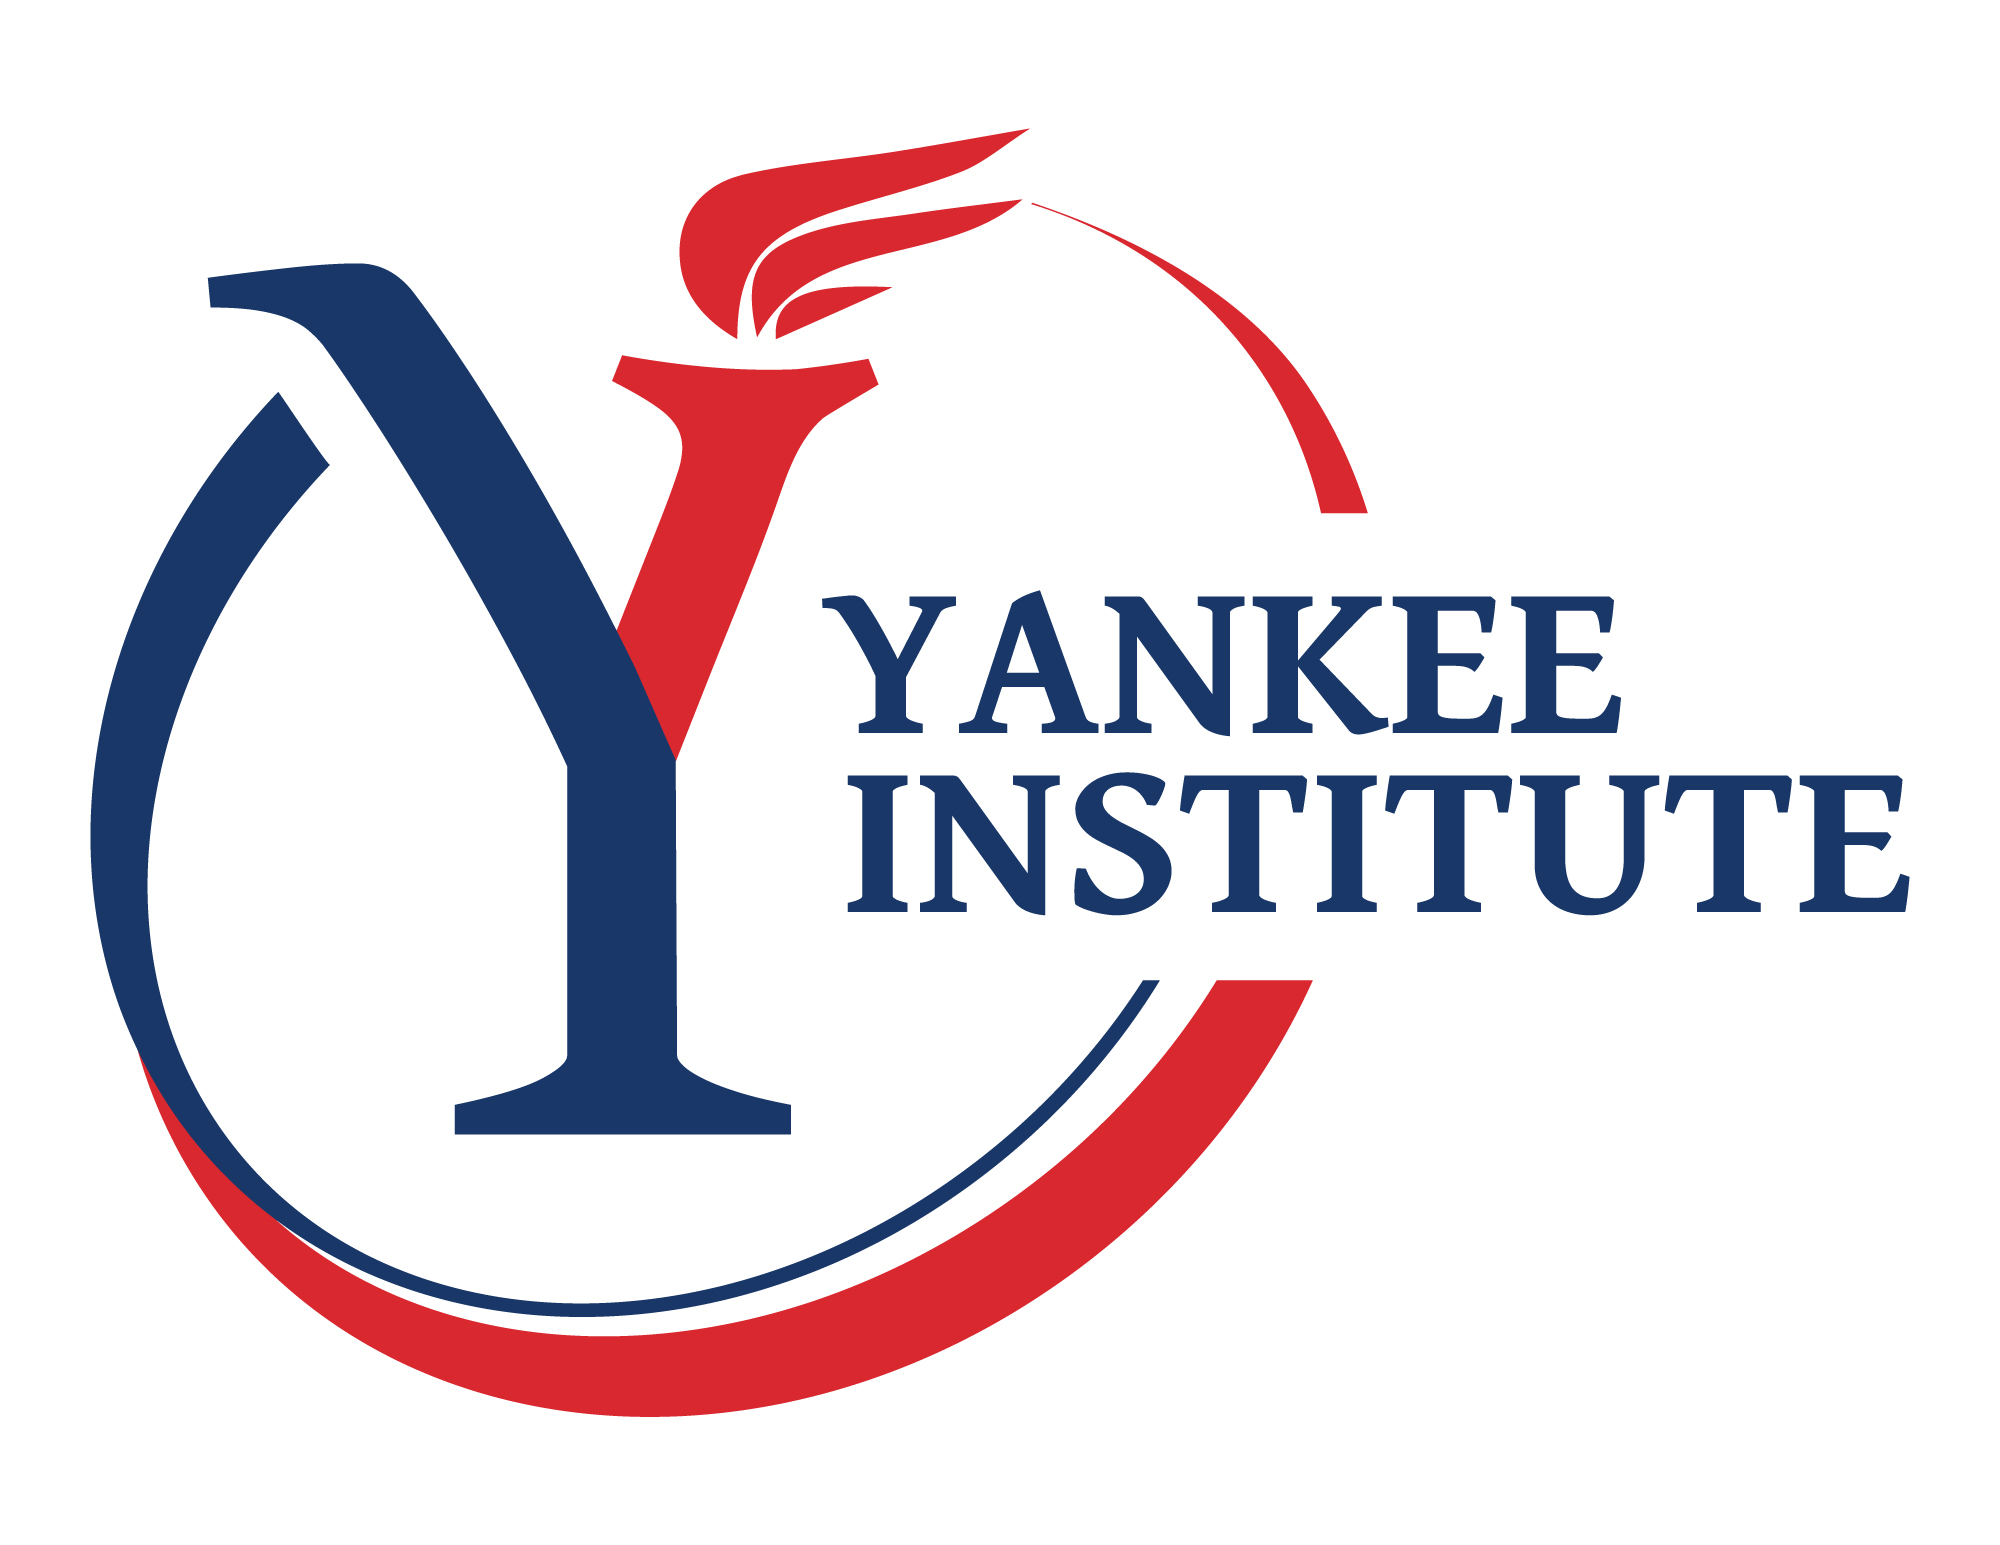 Yankee Institute statement on President Biden’s visit to Connecticut